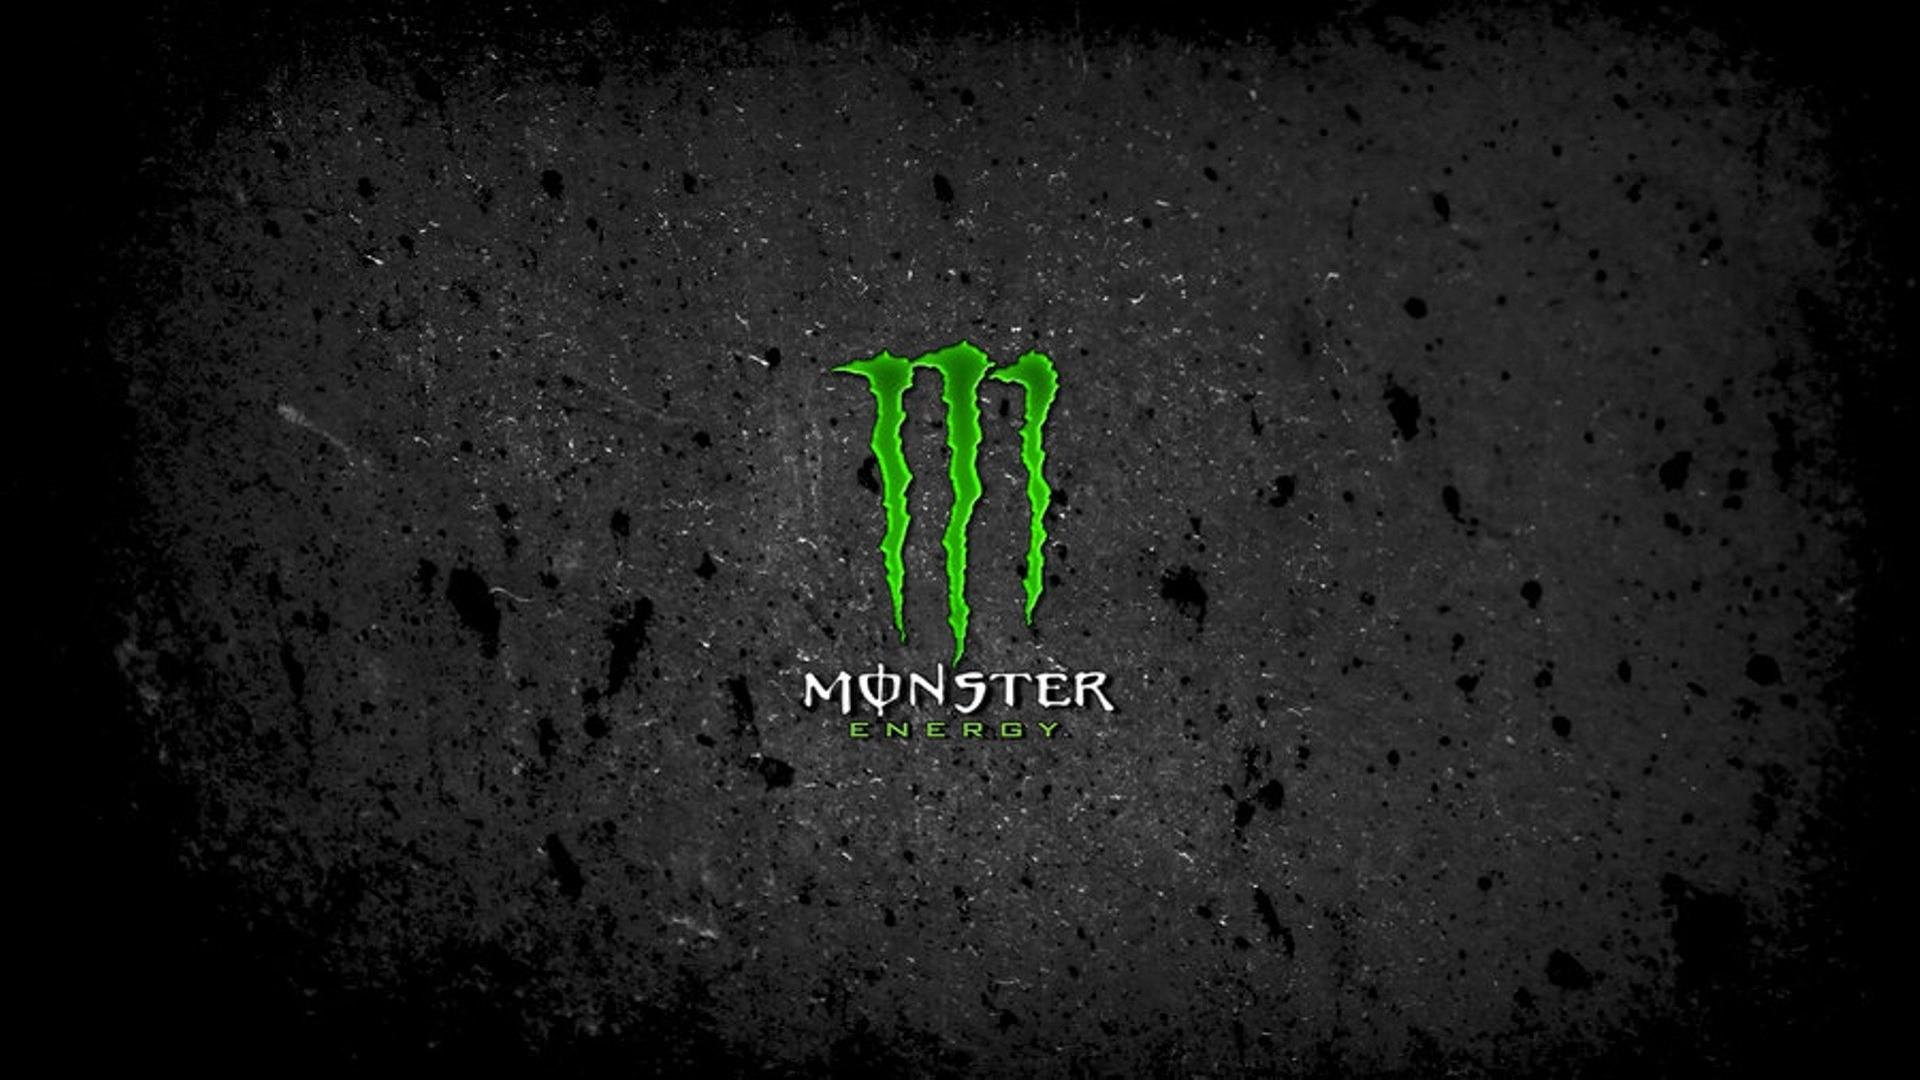 Monstah Monster Energy Background Desktop Wallpaper 4k